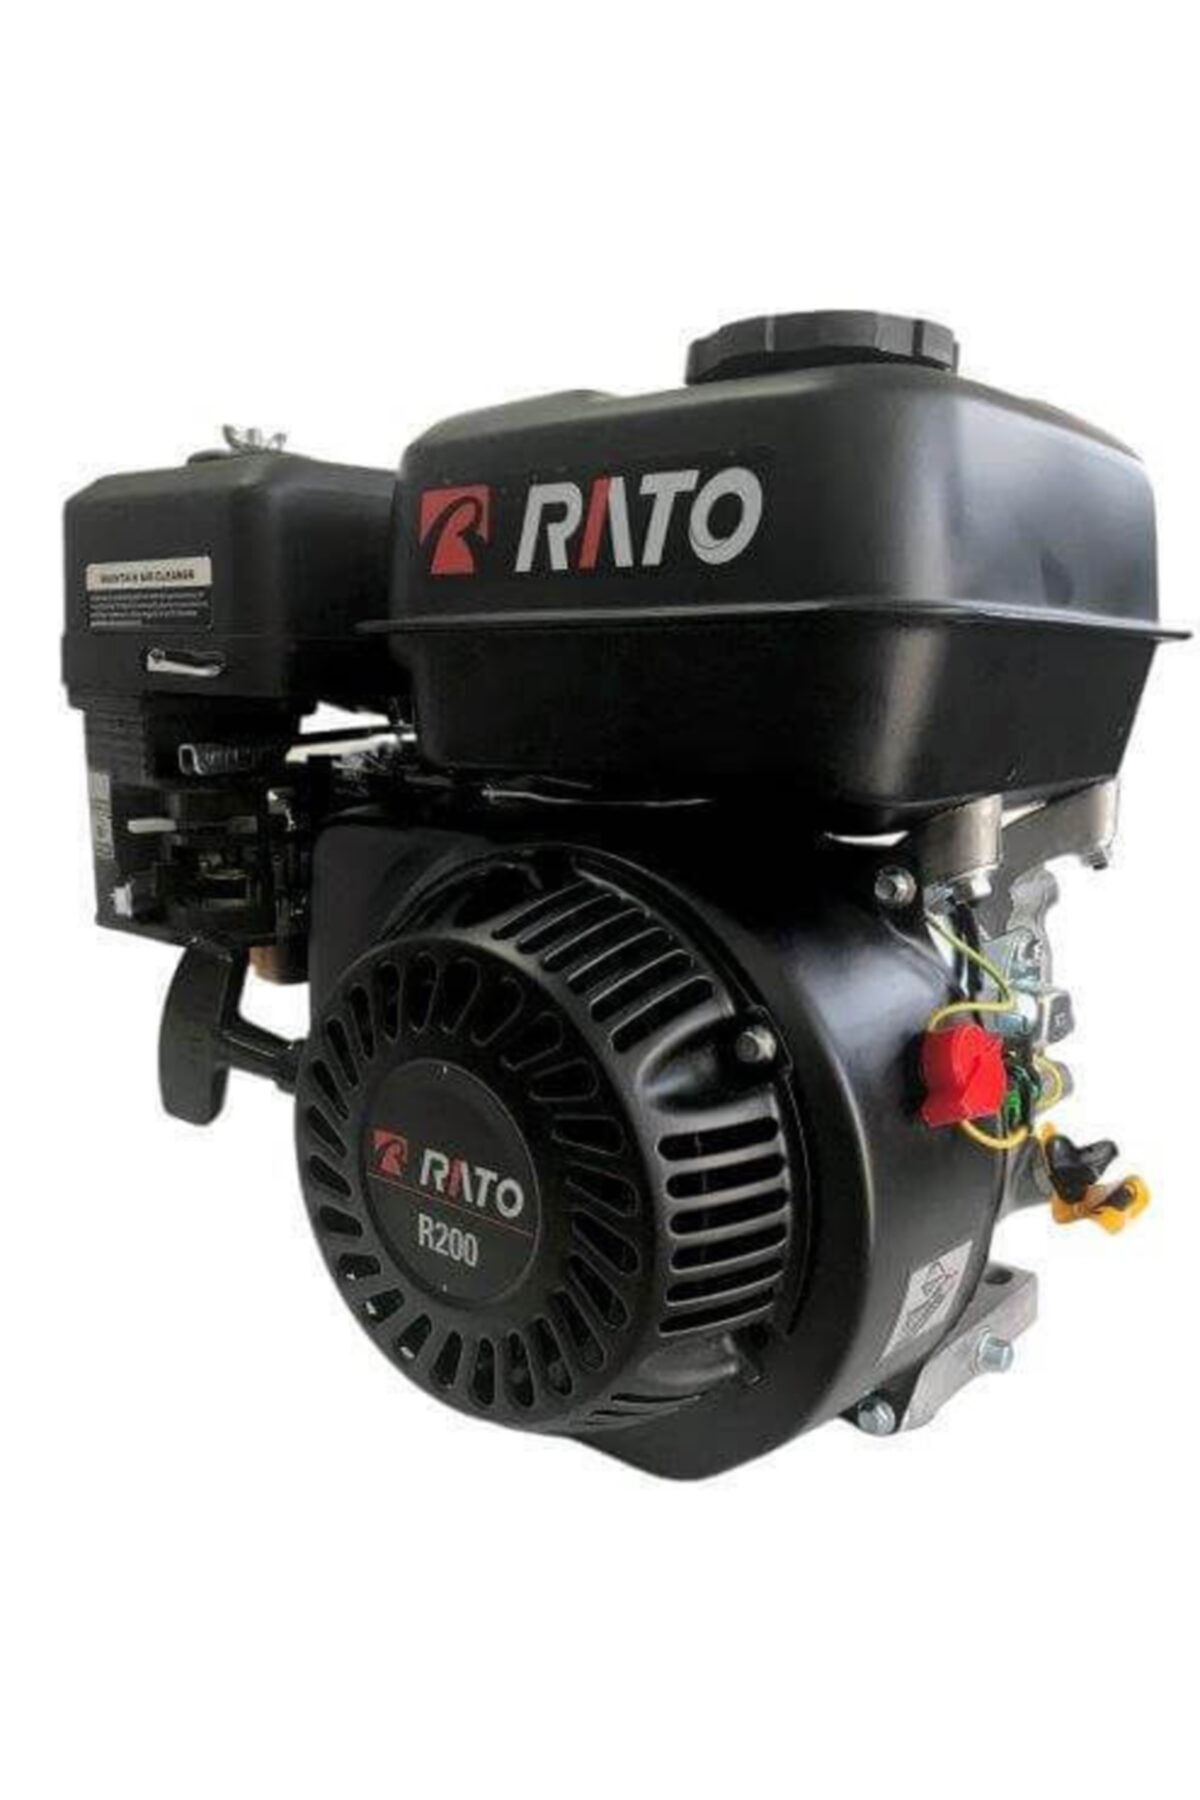 İtal Rato Tek Benzinli Motor Kamalı 6.5 Hp